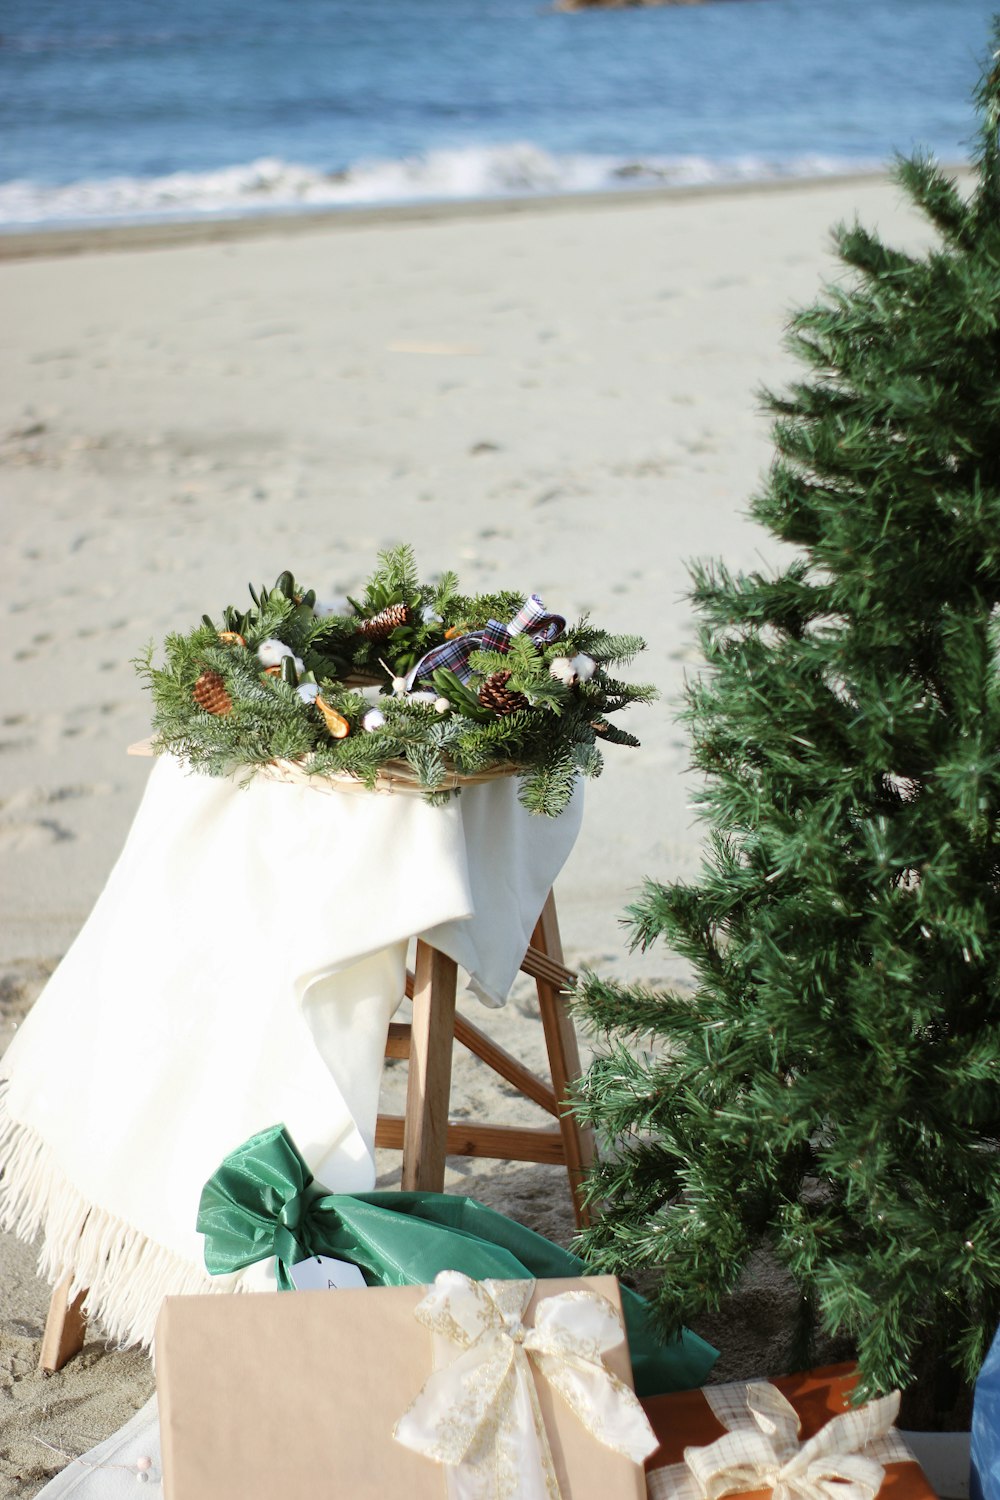 Ein Weihnachtsbaum am Strand mit Geschenken darunter